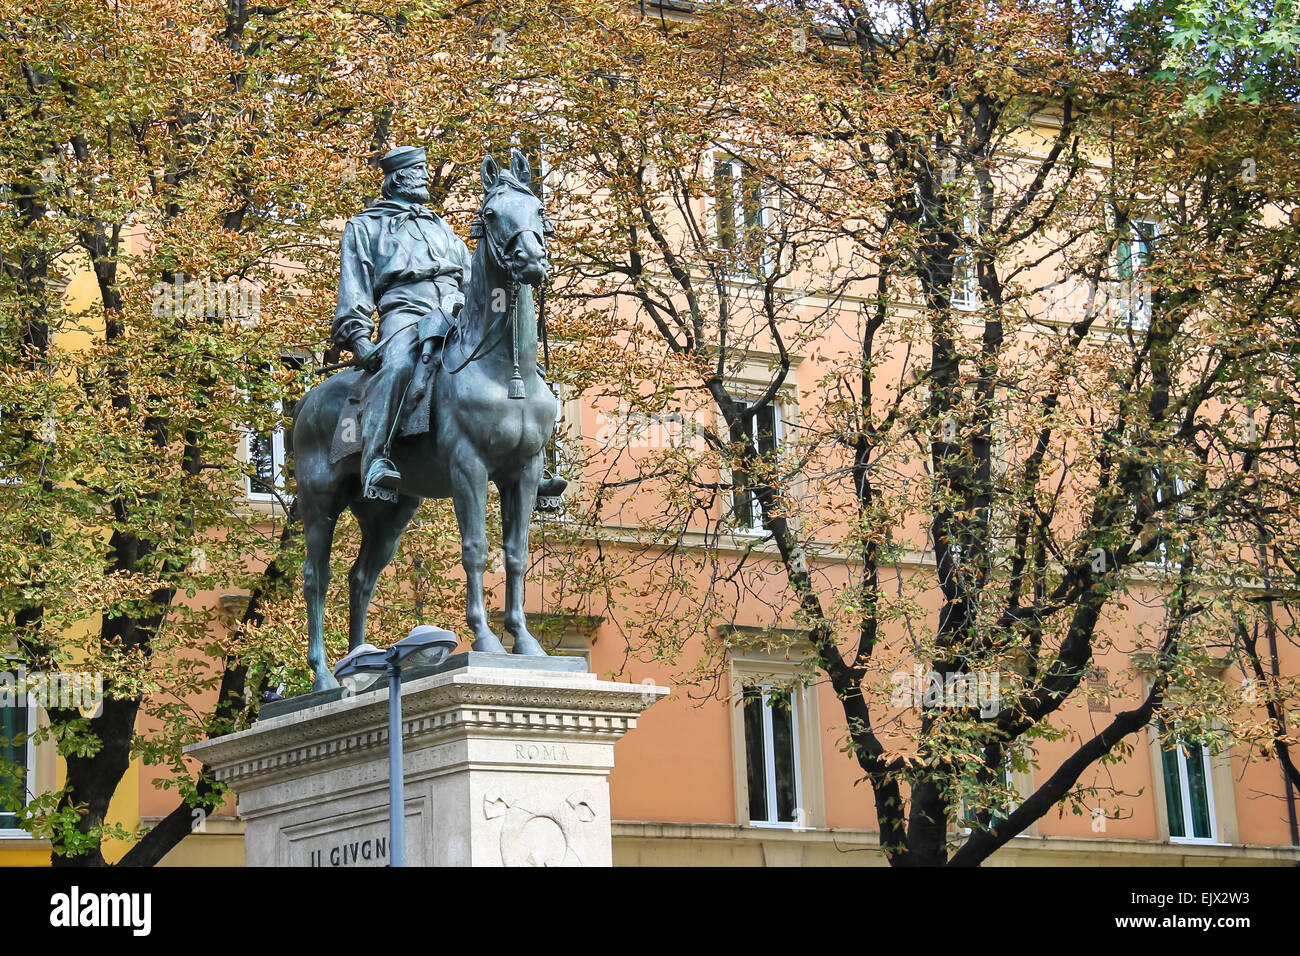 Equestrian statue of Giuseppe Garibaldi in Bologna. Italy Stock Photo